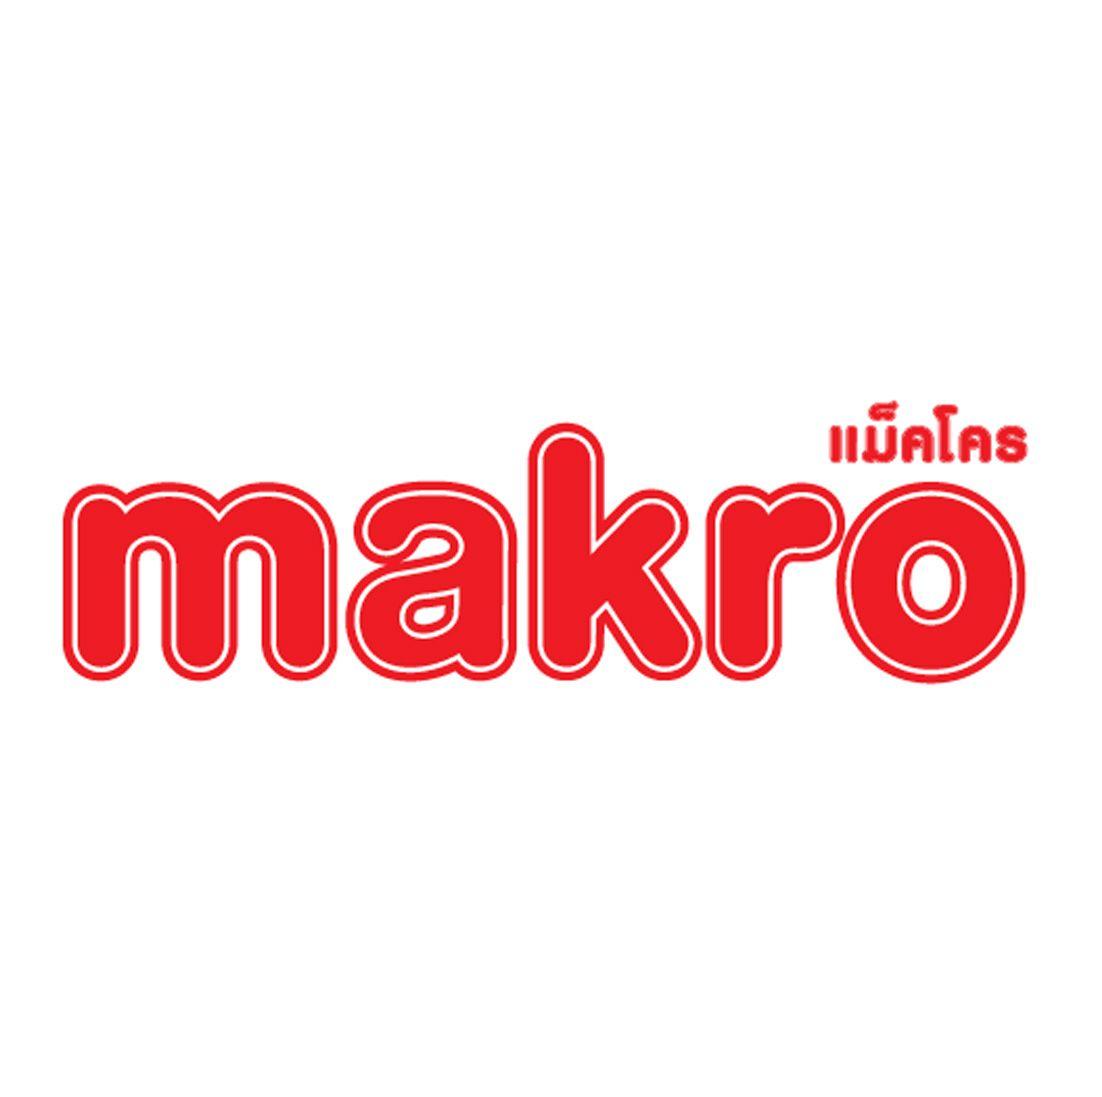 Makro Logo - Makro Logos